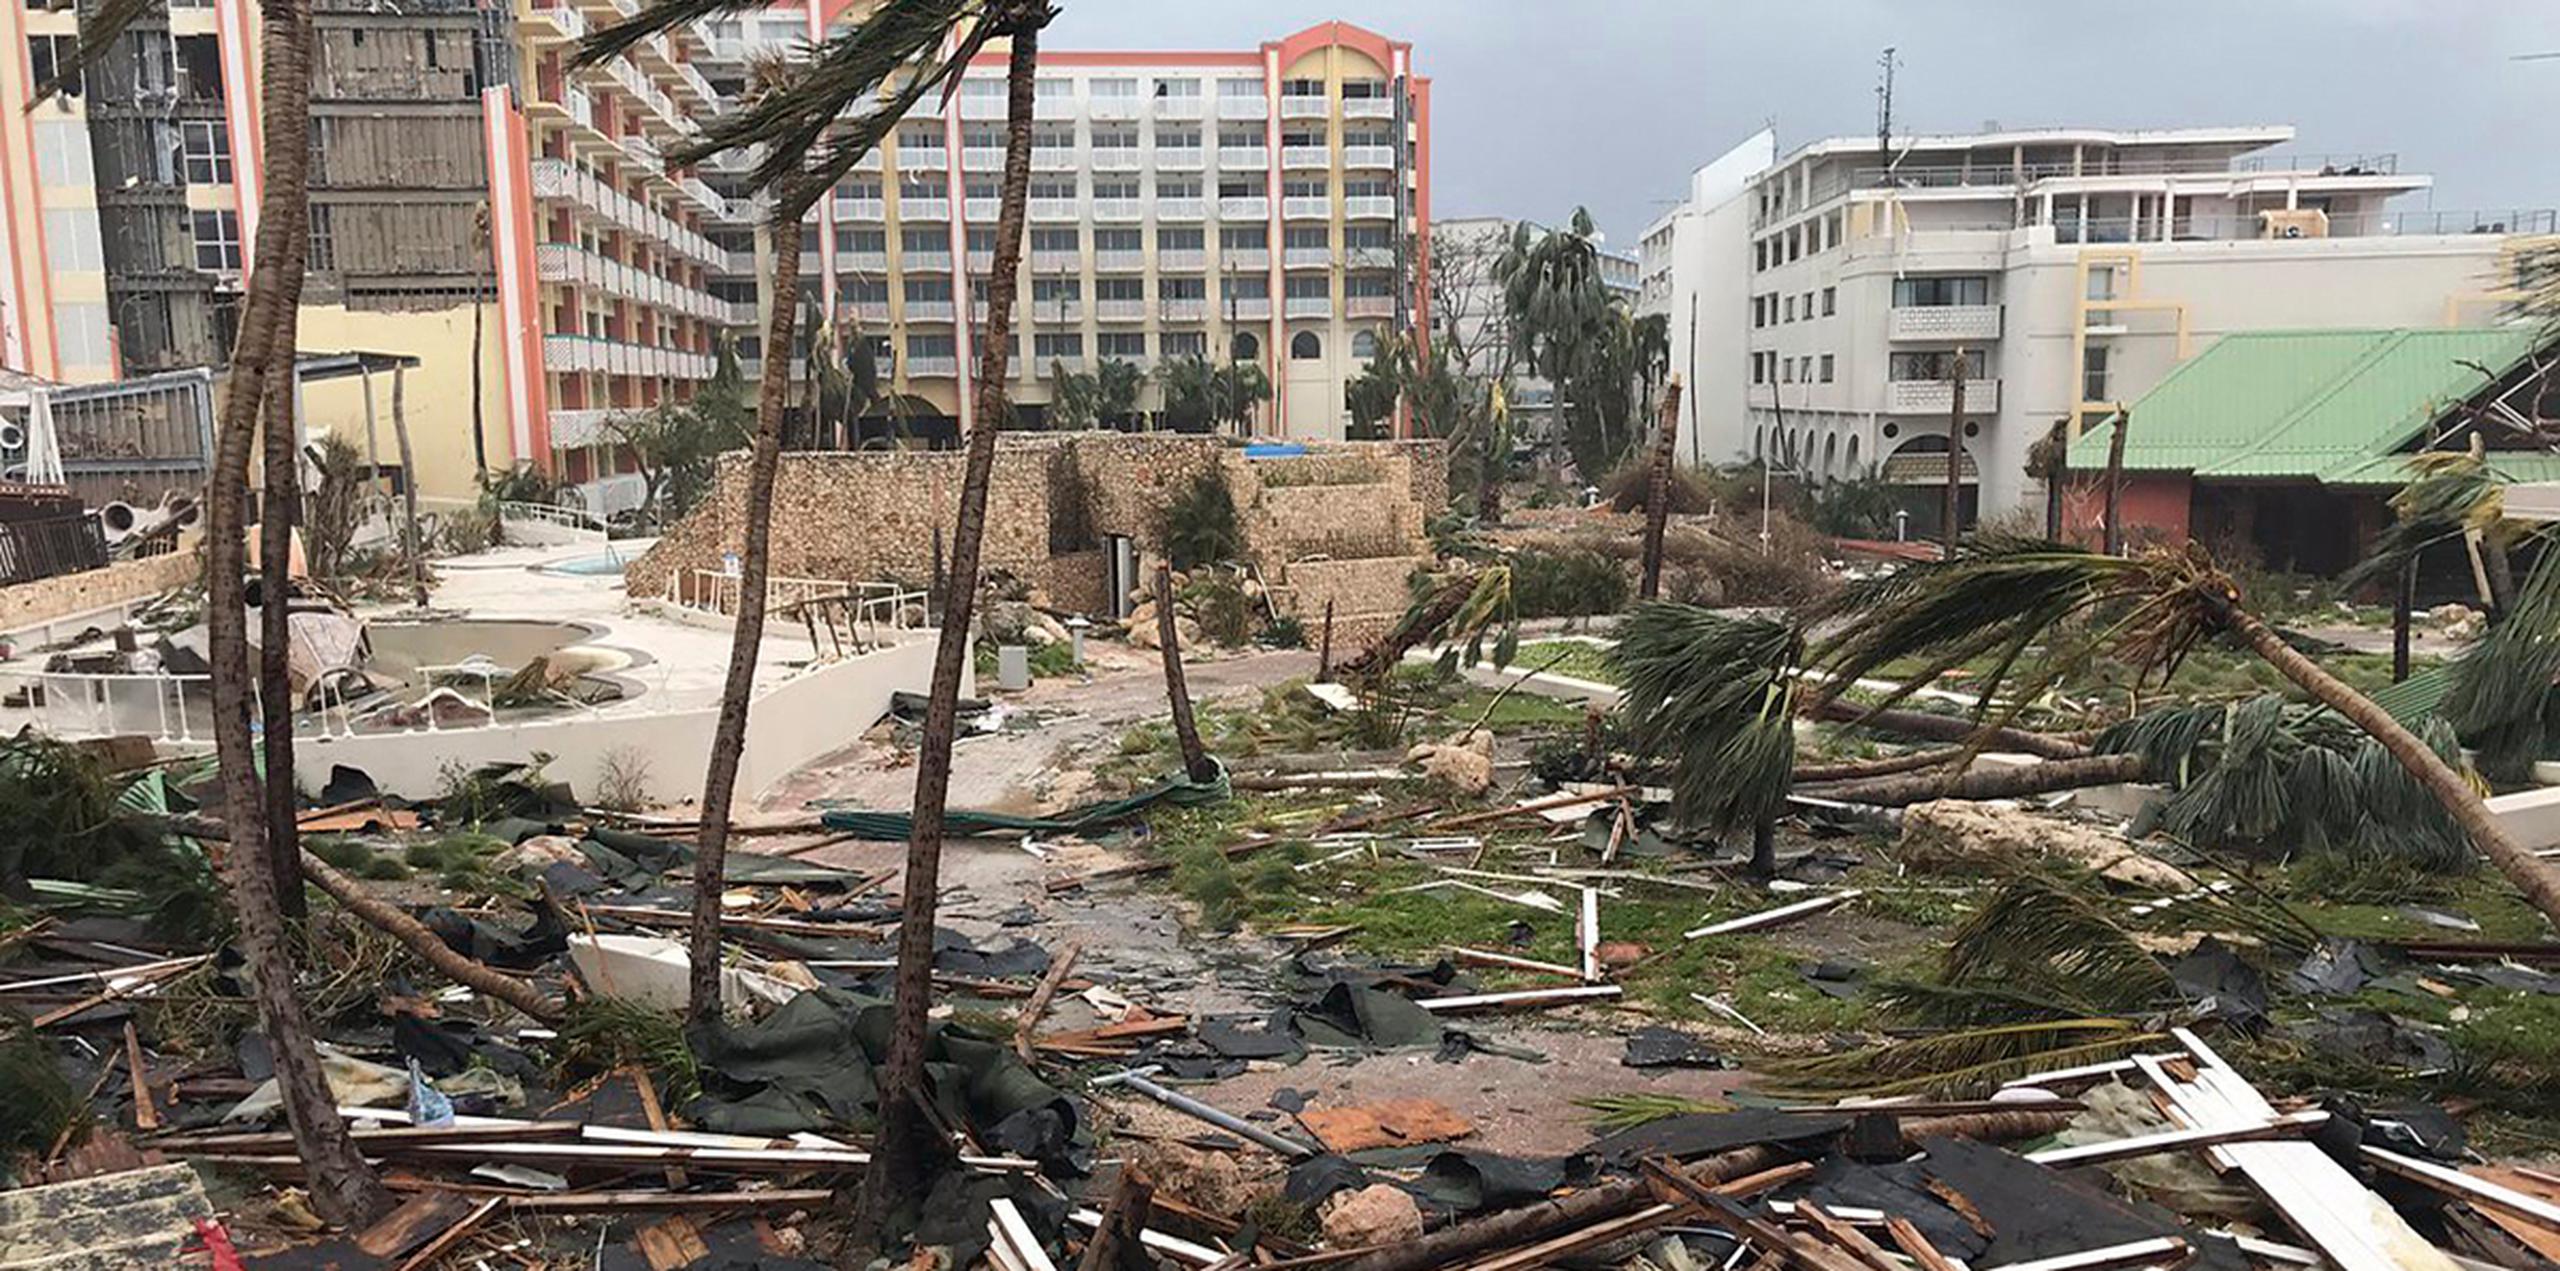 Irma trazó una ruta de devastación por el norte del Caribe, dejando a miles de personas sin hogar tras destruir edificios y arrancar árboles. (AP)